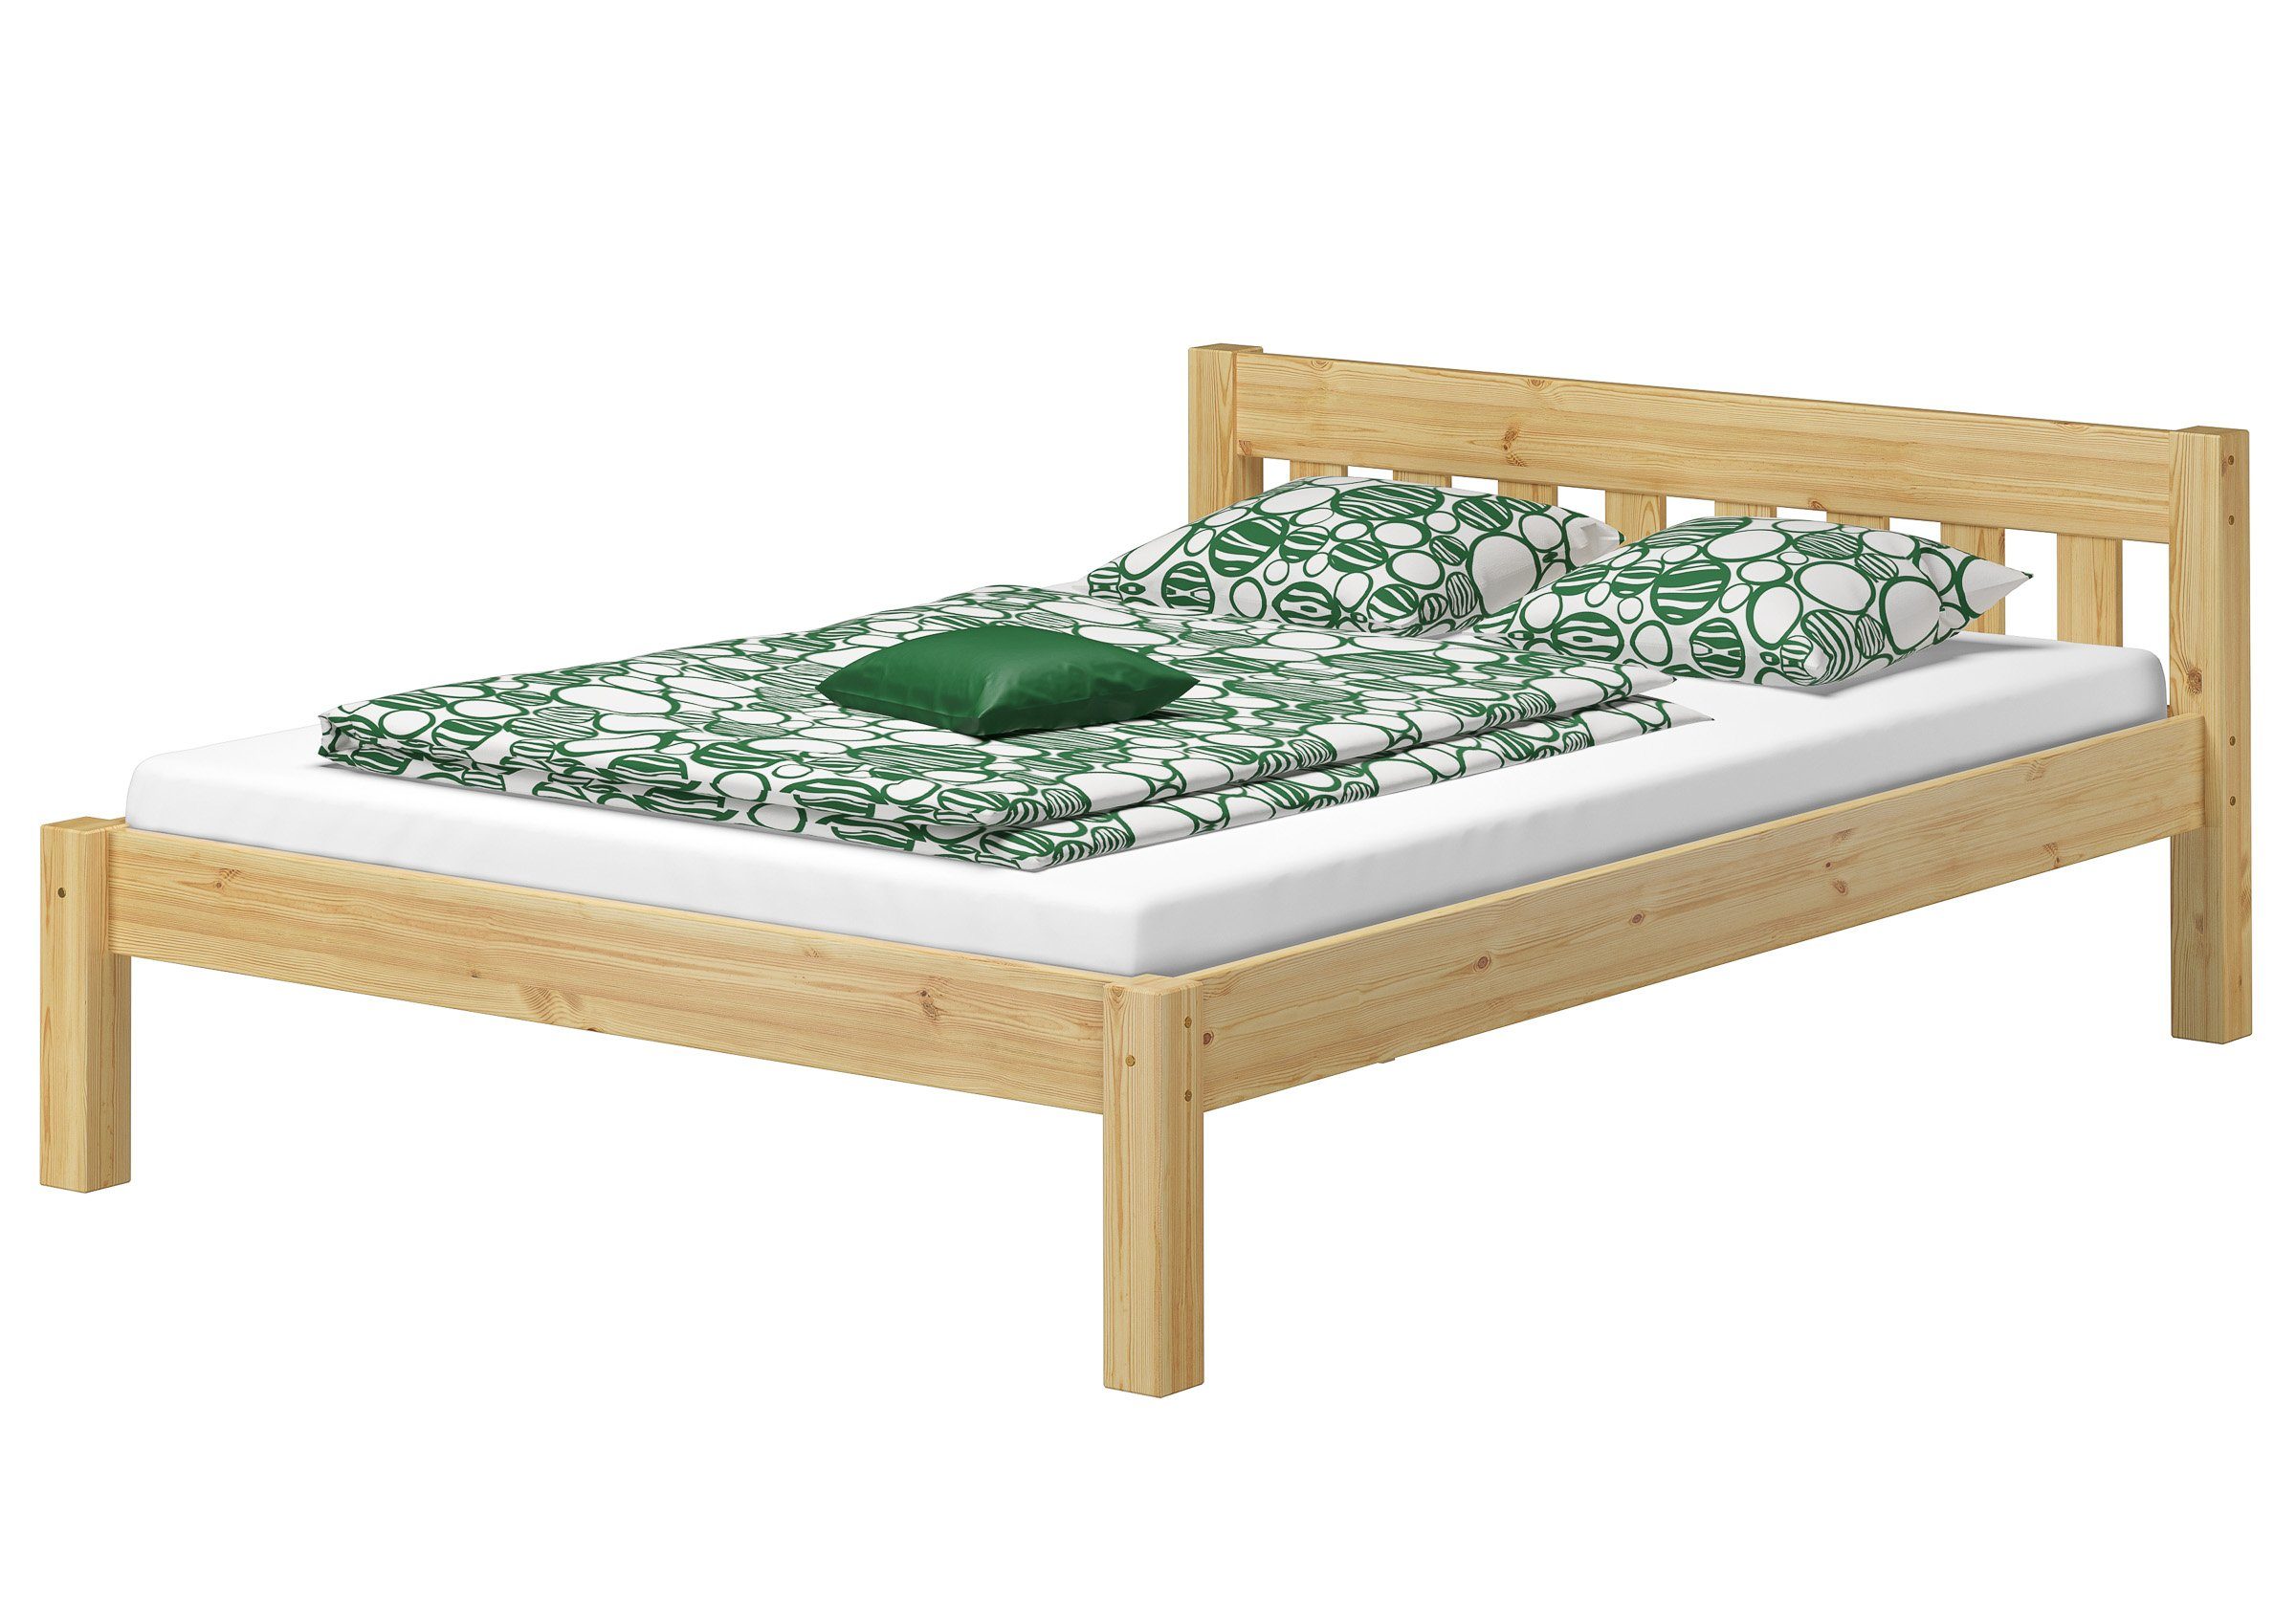 ERST-HOLZ Bett Kurzes Doppelbett Massivholzbett 140x190 aus Kiefer, wählbares Zubehör, Kieferfarblos lackiert